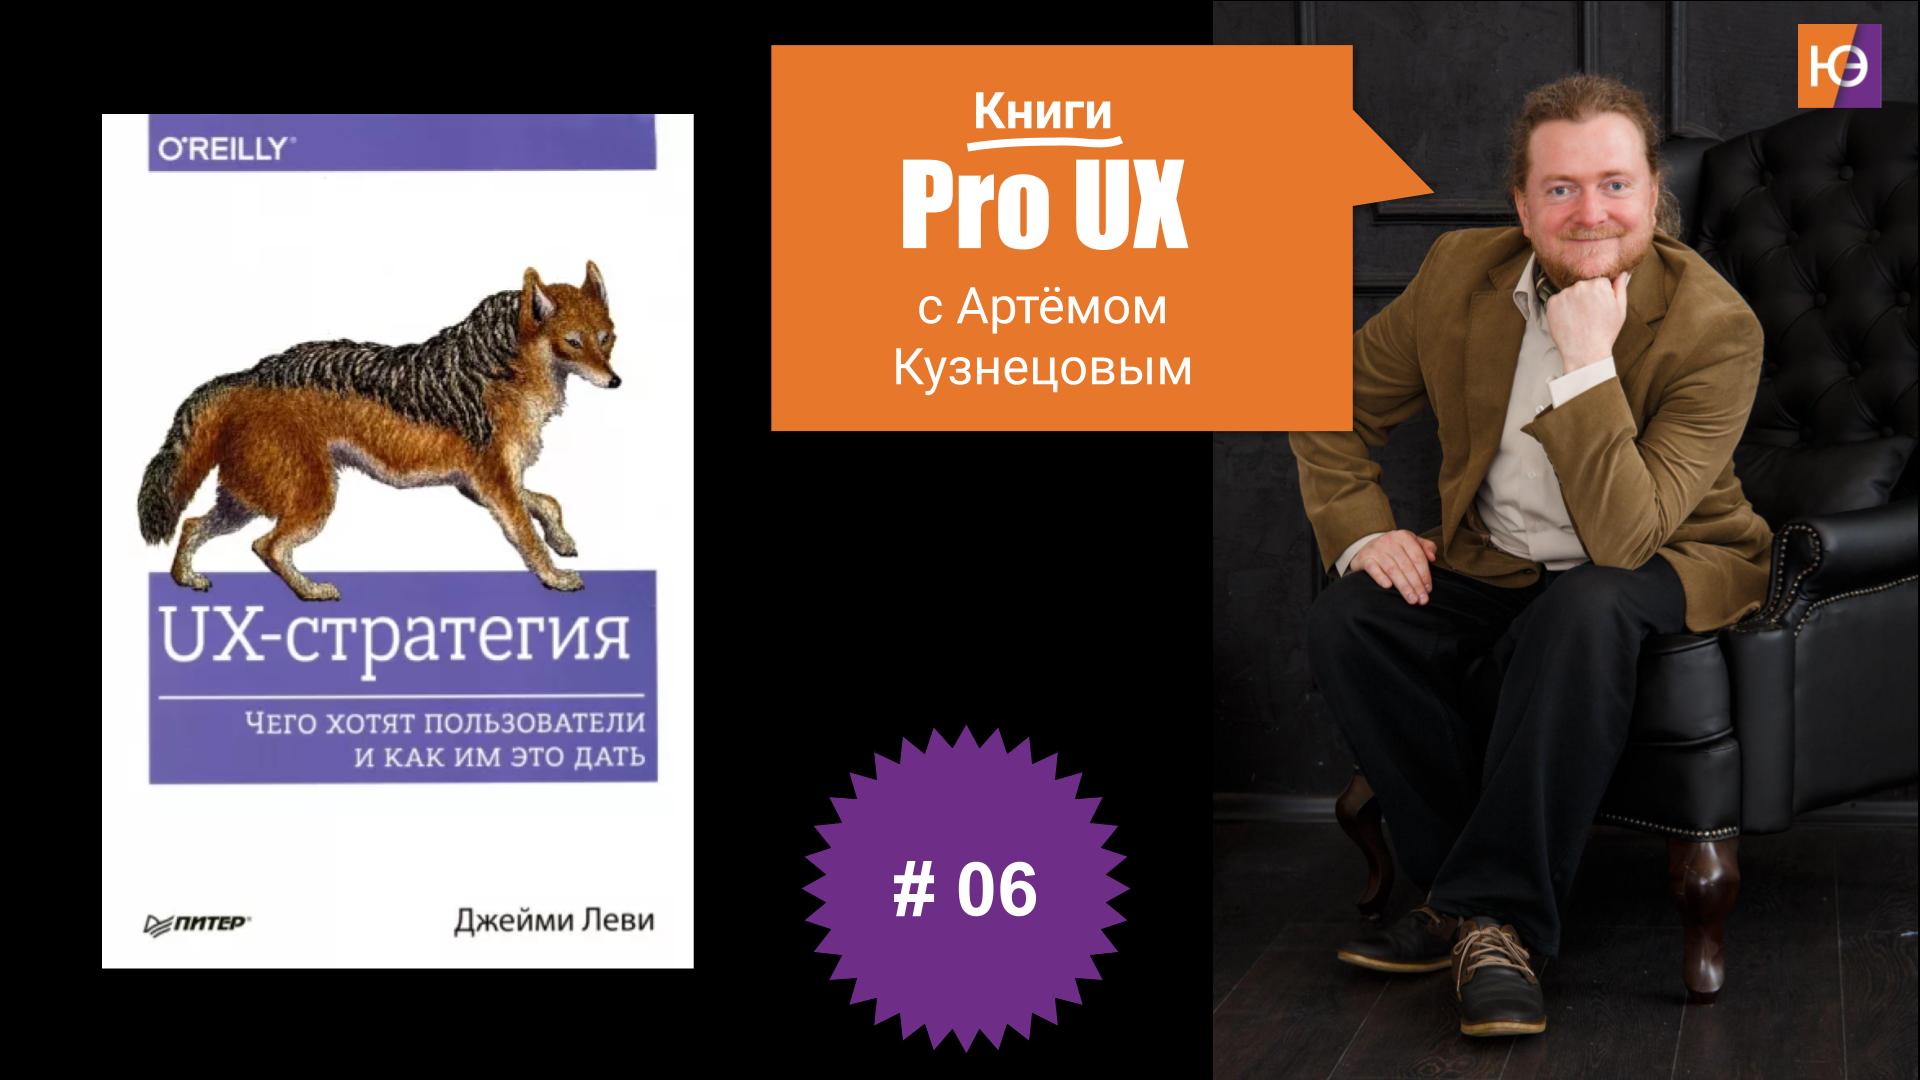 Книги Pro UX c Артёмом Кузнецовым #6 – Джейми Леви. “UX-стратегия. Чего хотят пользователи и как им это дать”